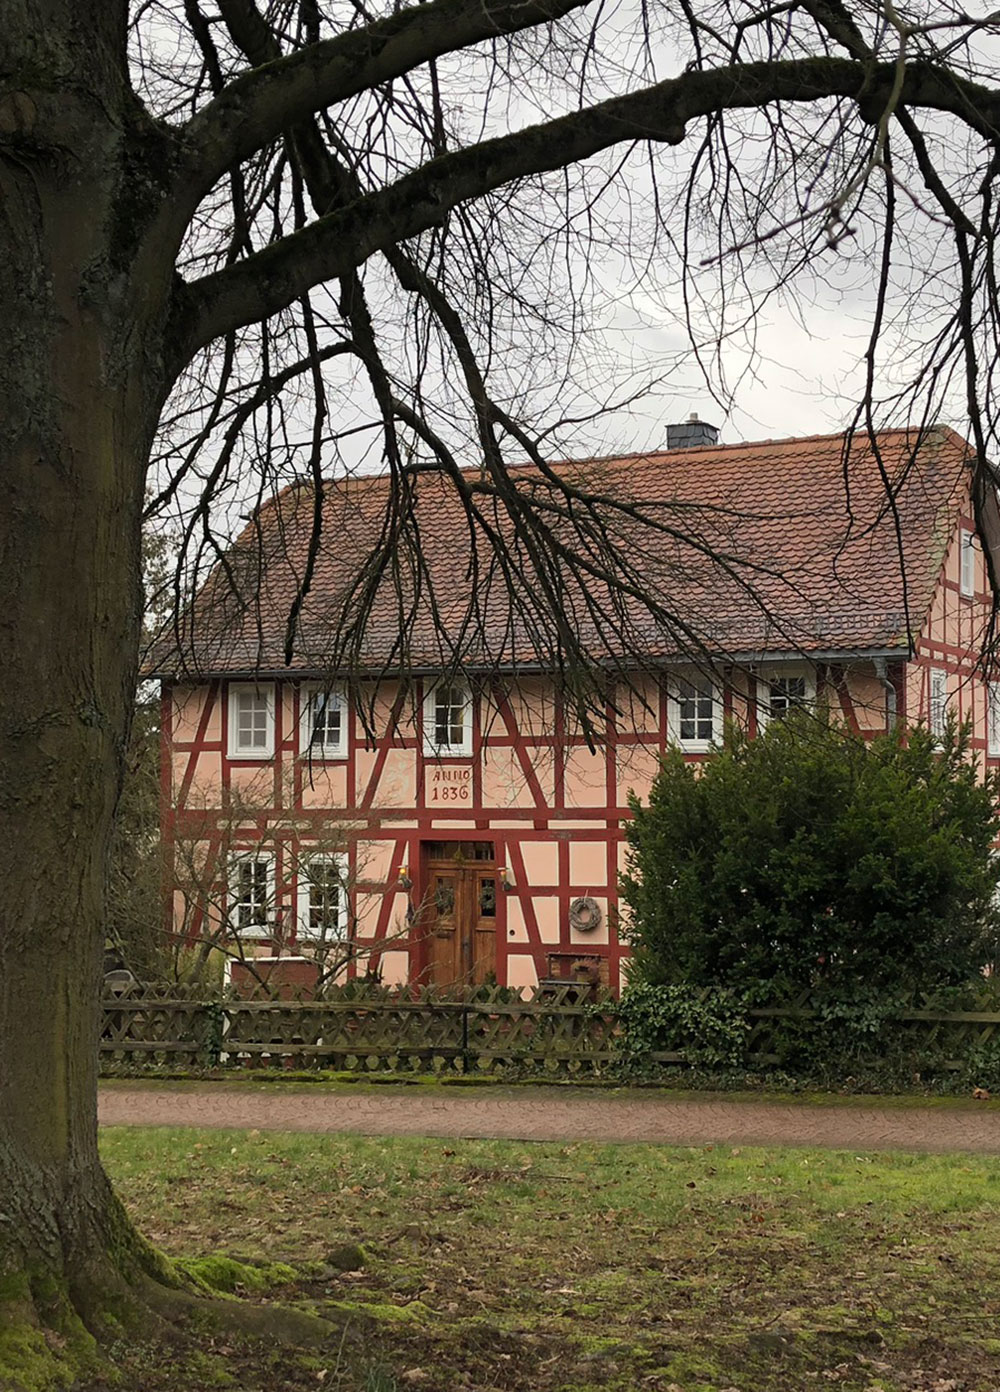 rosa Fachwerkhaus von 1836 in Marburg-Wehrshausen